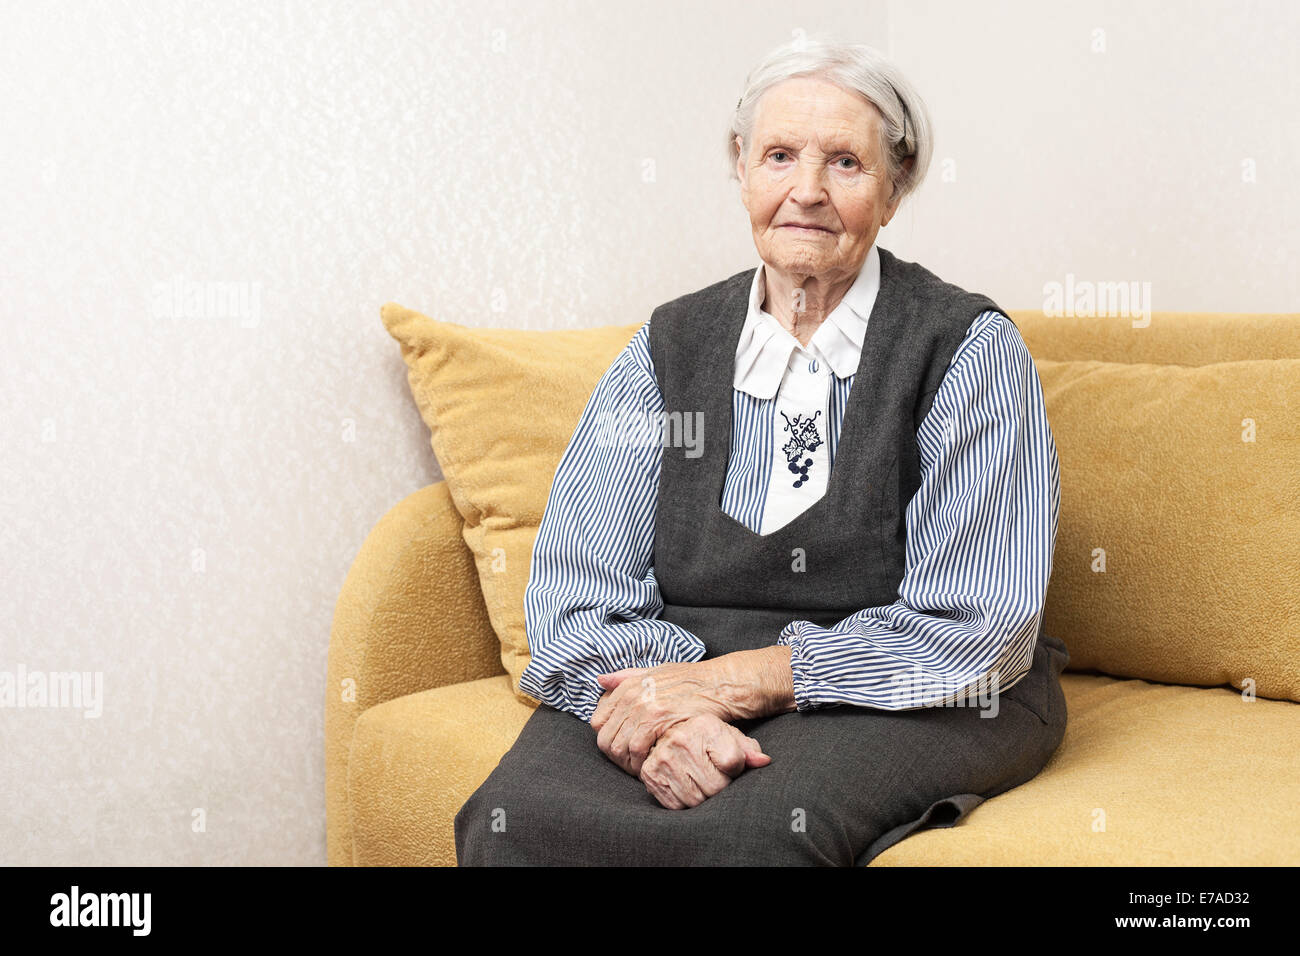 Пожилая женщина сидит